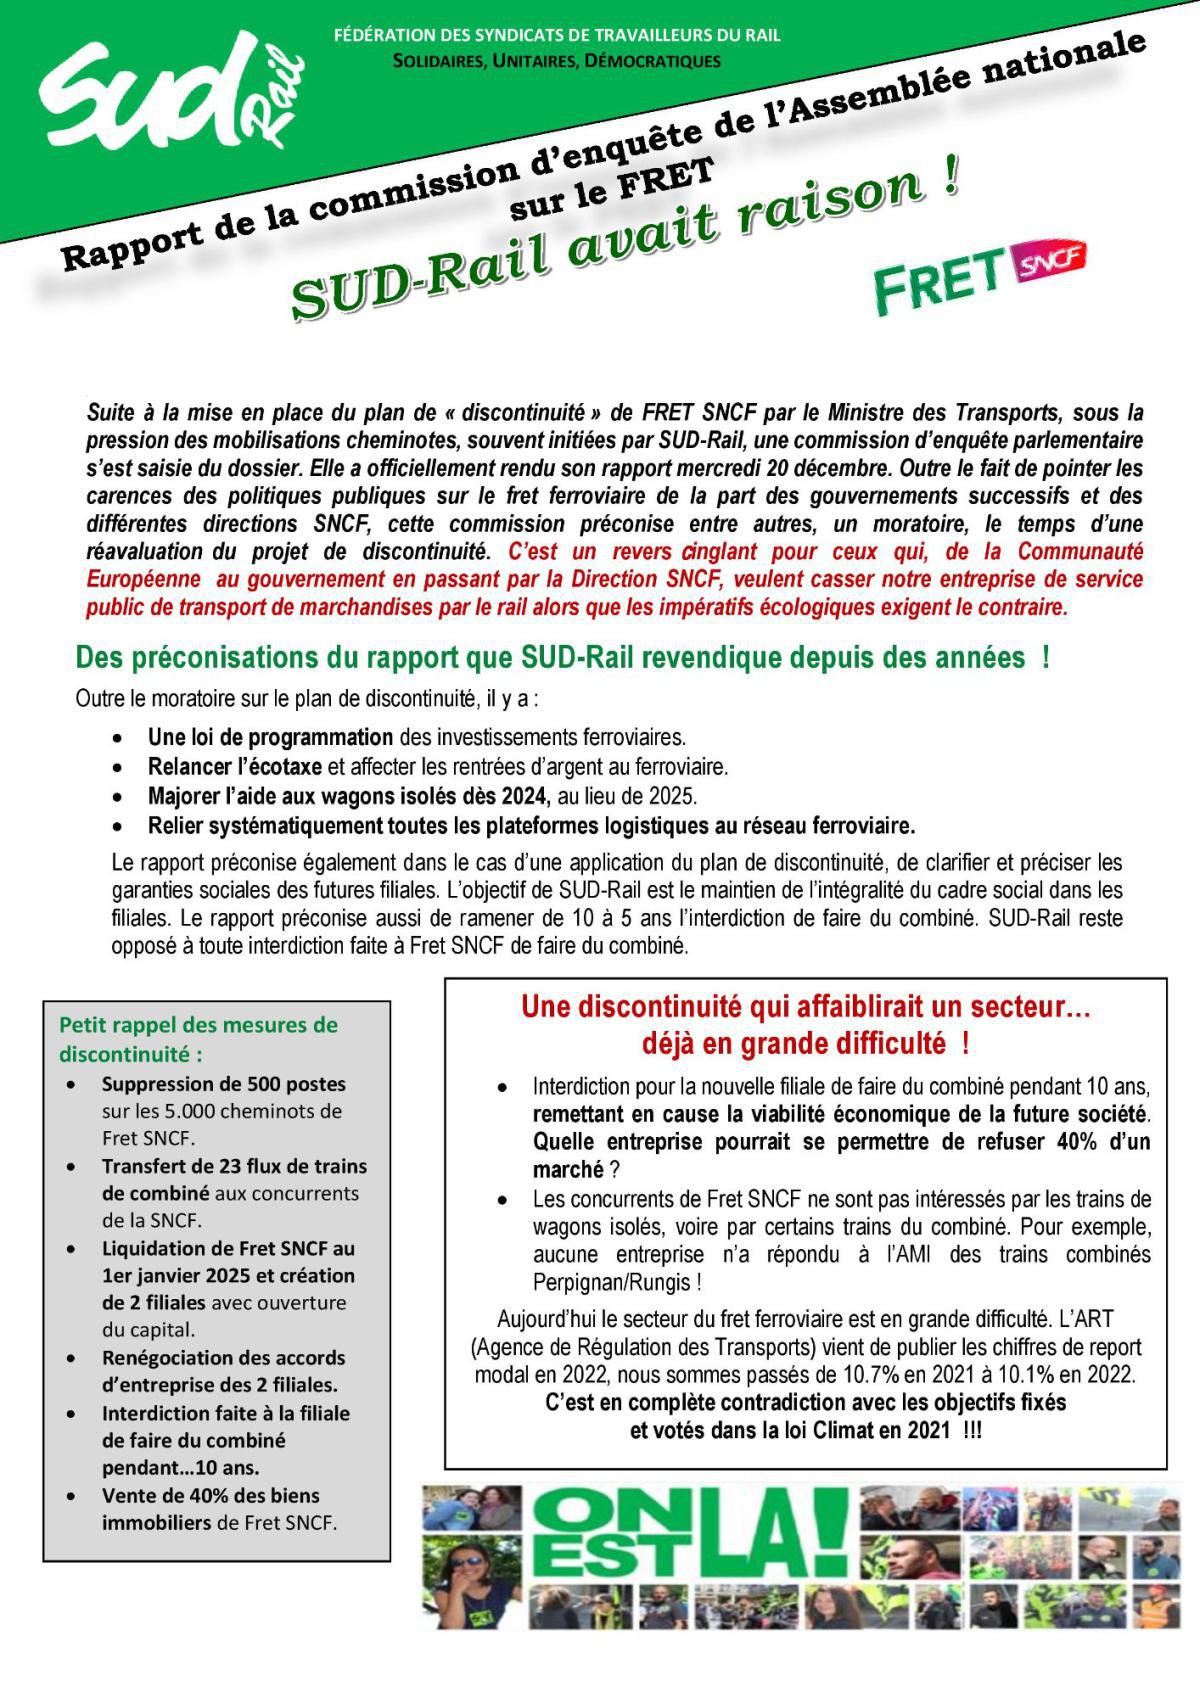 Rapport de la commission d’enquête de l’assemblée nationale sur le FRET : SUD-Rail avait raison !